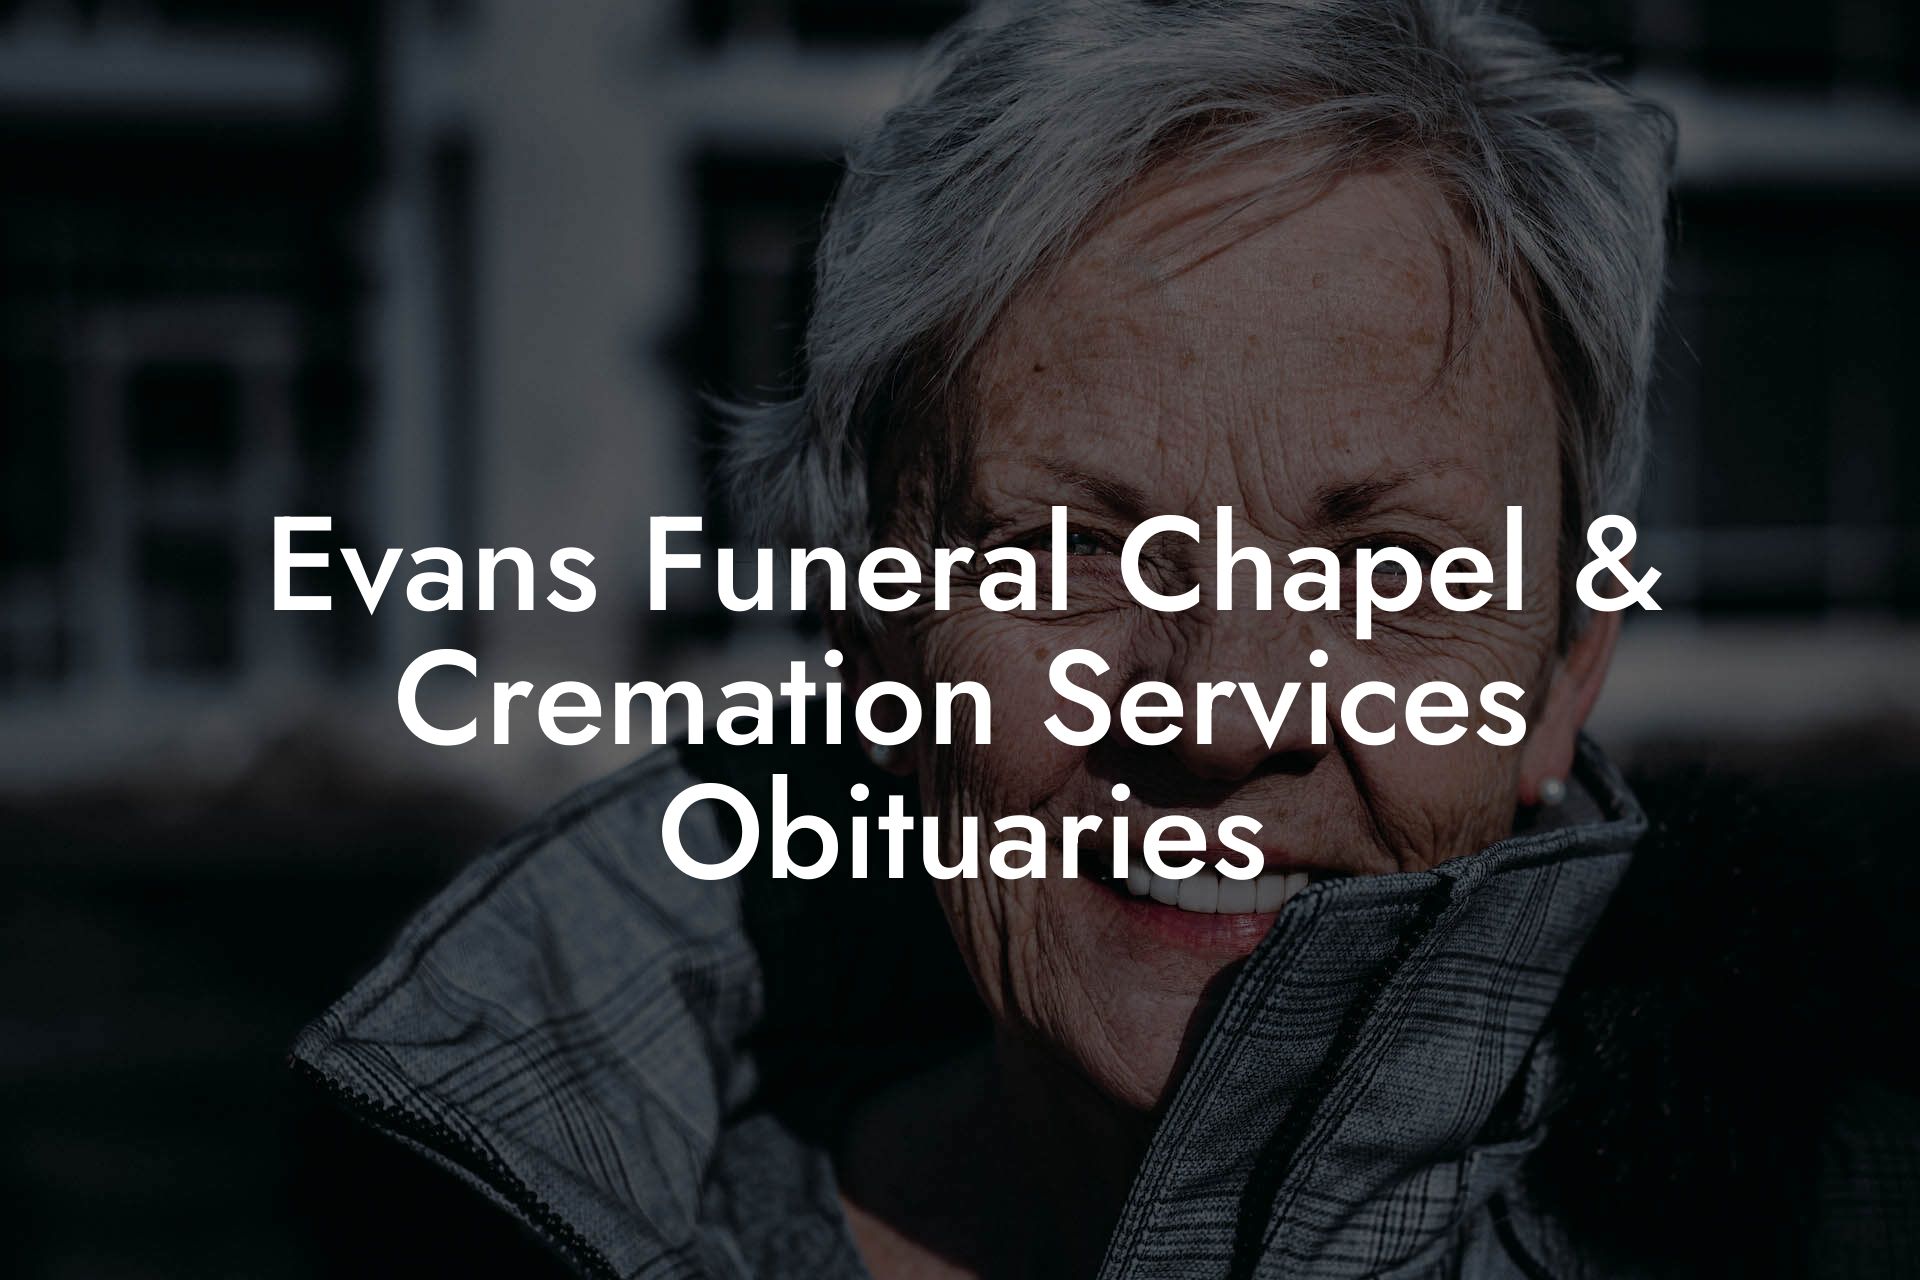 Evans Funeral Chapel & Cremation Services Obituaries